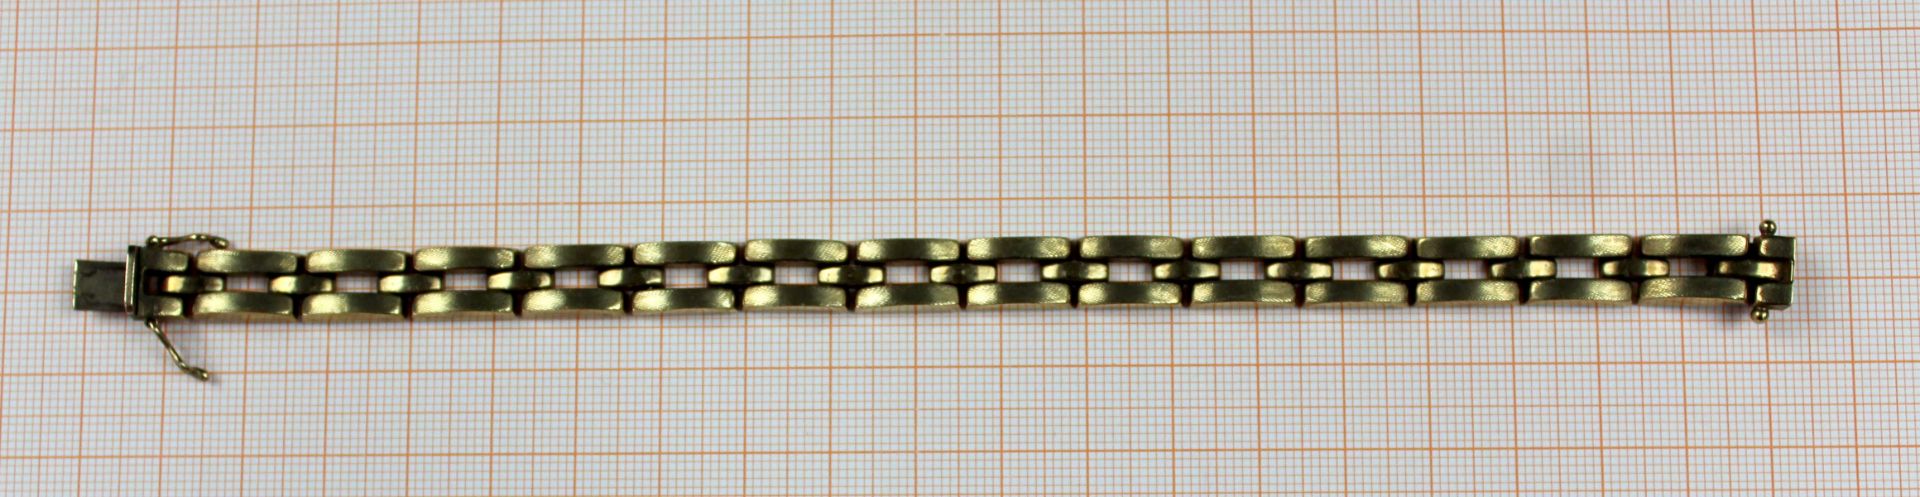 Panzer- Armband. Gelb Gold 333. 15,0 Gramm.Circa 20 lang.Bracelet. Yellow gold 333. 15,0 gram. - Image 8 of 9